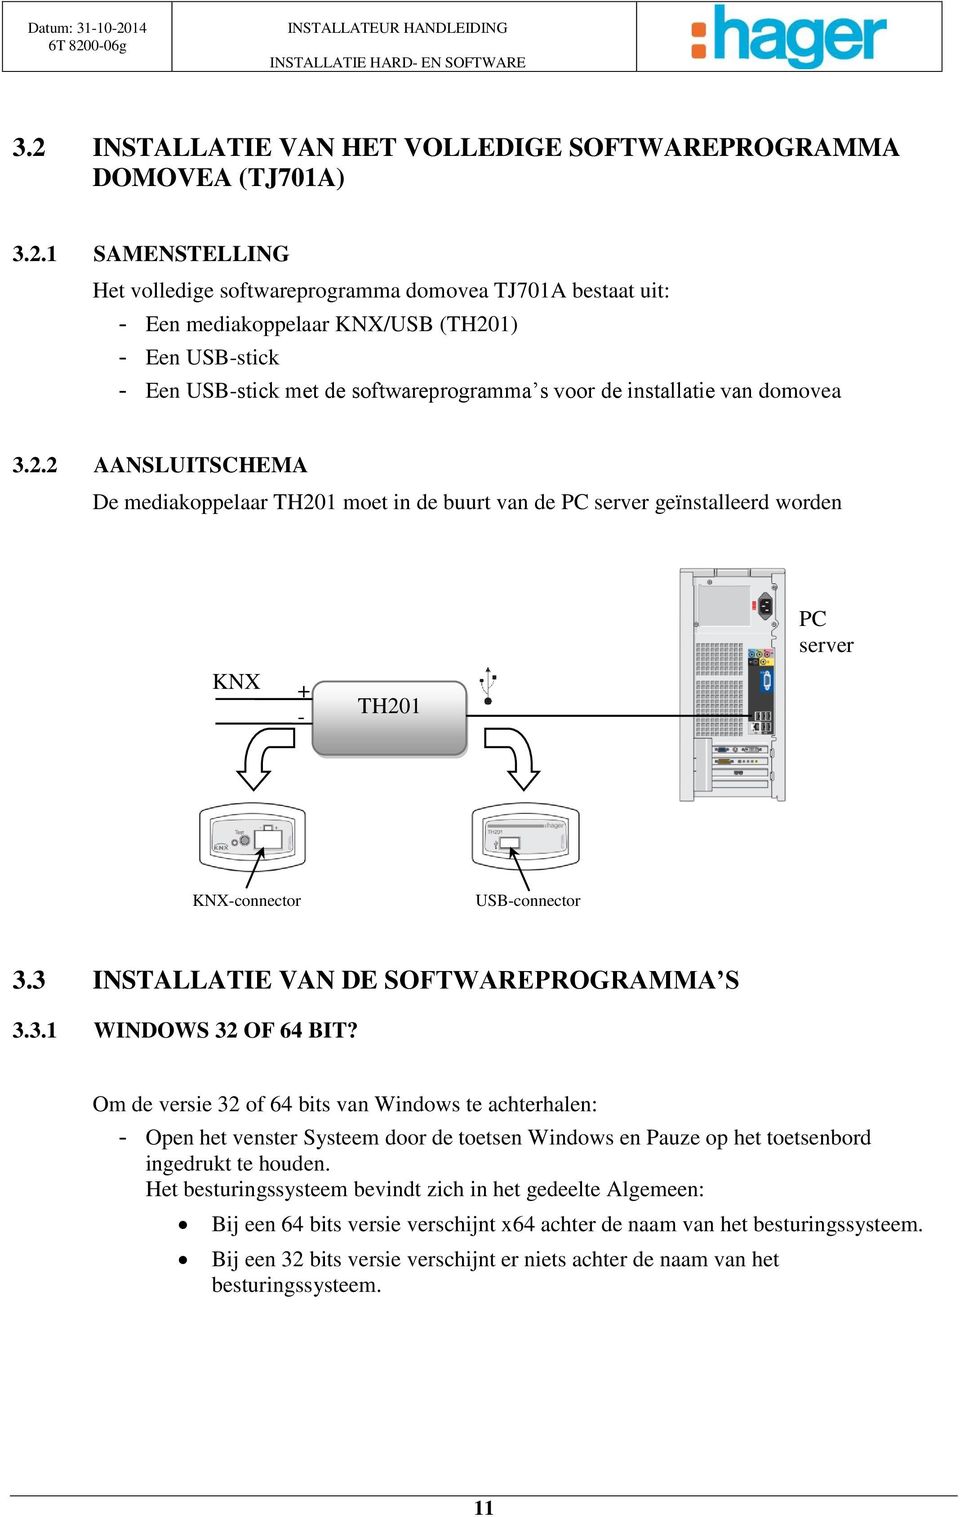 1 SAMENSTELLING Het volledige softwareprogramma domovea TJ701A bestaat uit: - Een mediakoppelaar KNX/USB (TH201) - Een USB-stick - Een USB-stick met de softwareprogramma s voor de installatie van